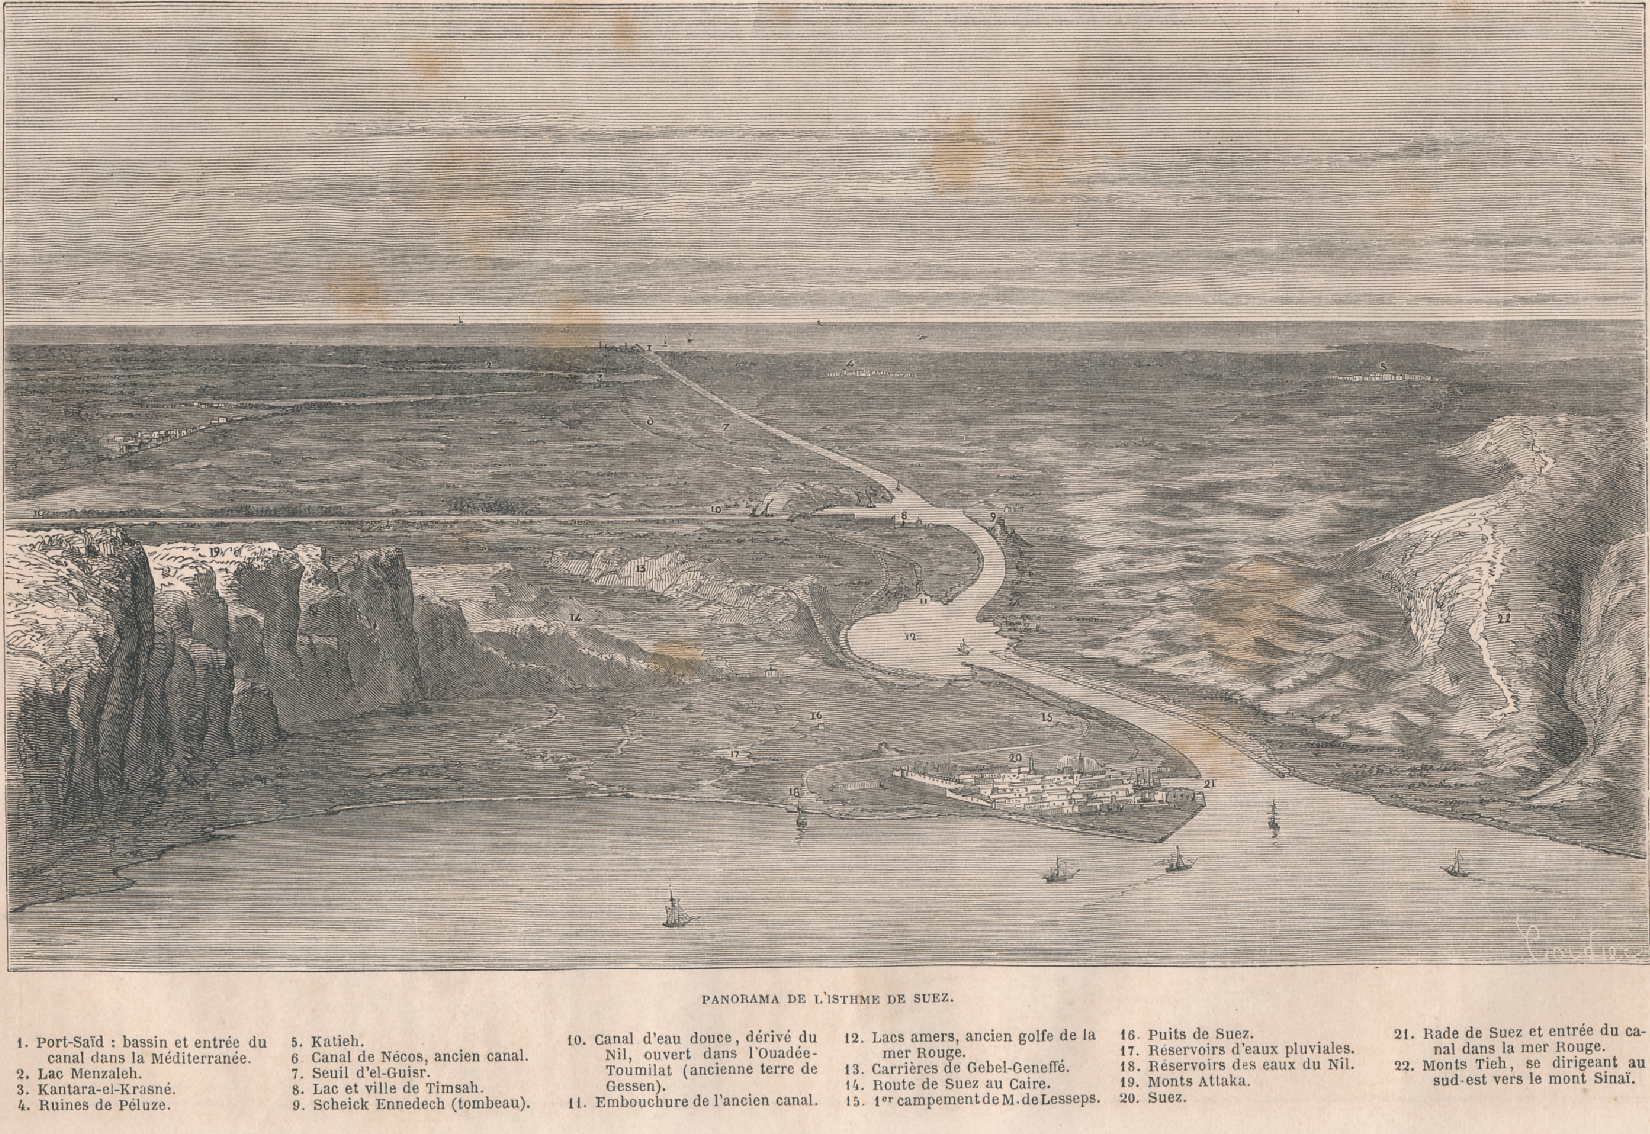 ZM. Une Excursion au canal de Suez. Le Tour du Monde. Par M. Paul Merruau. Panorama de Listhme de Suez.1862